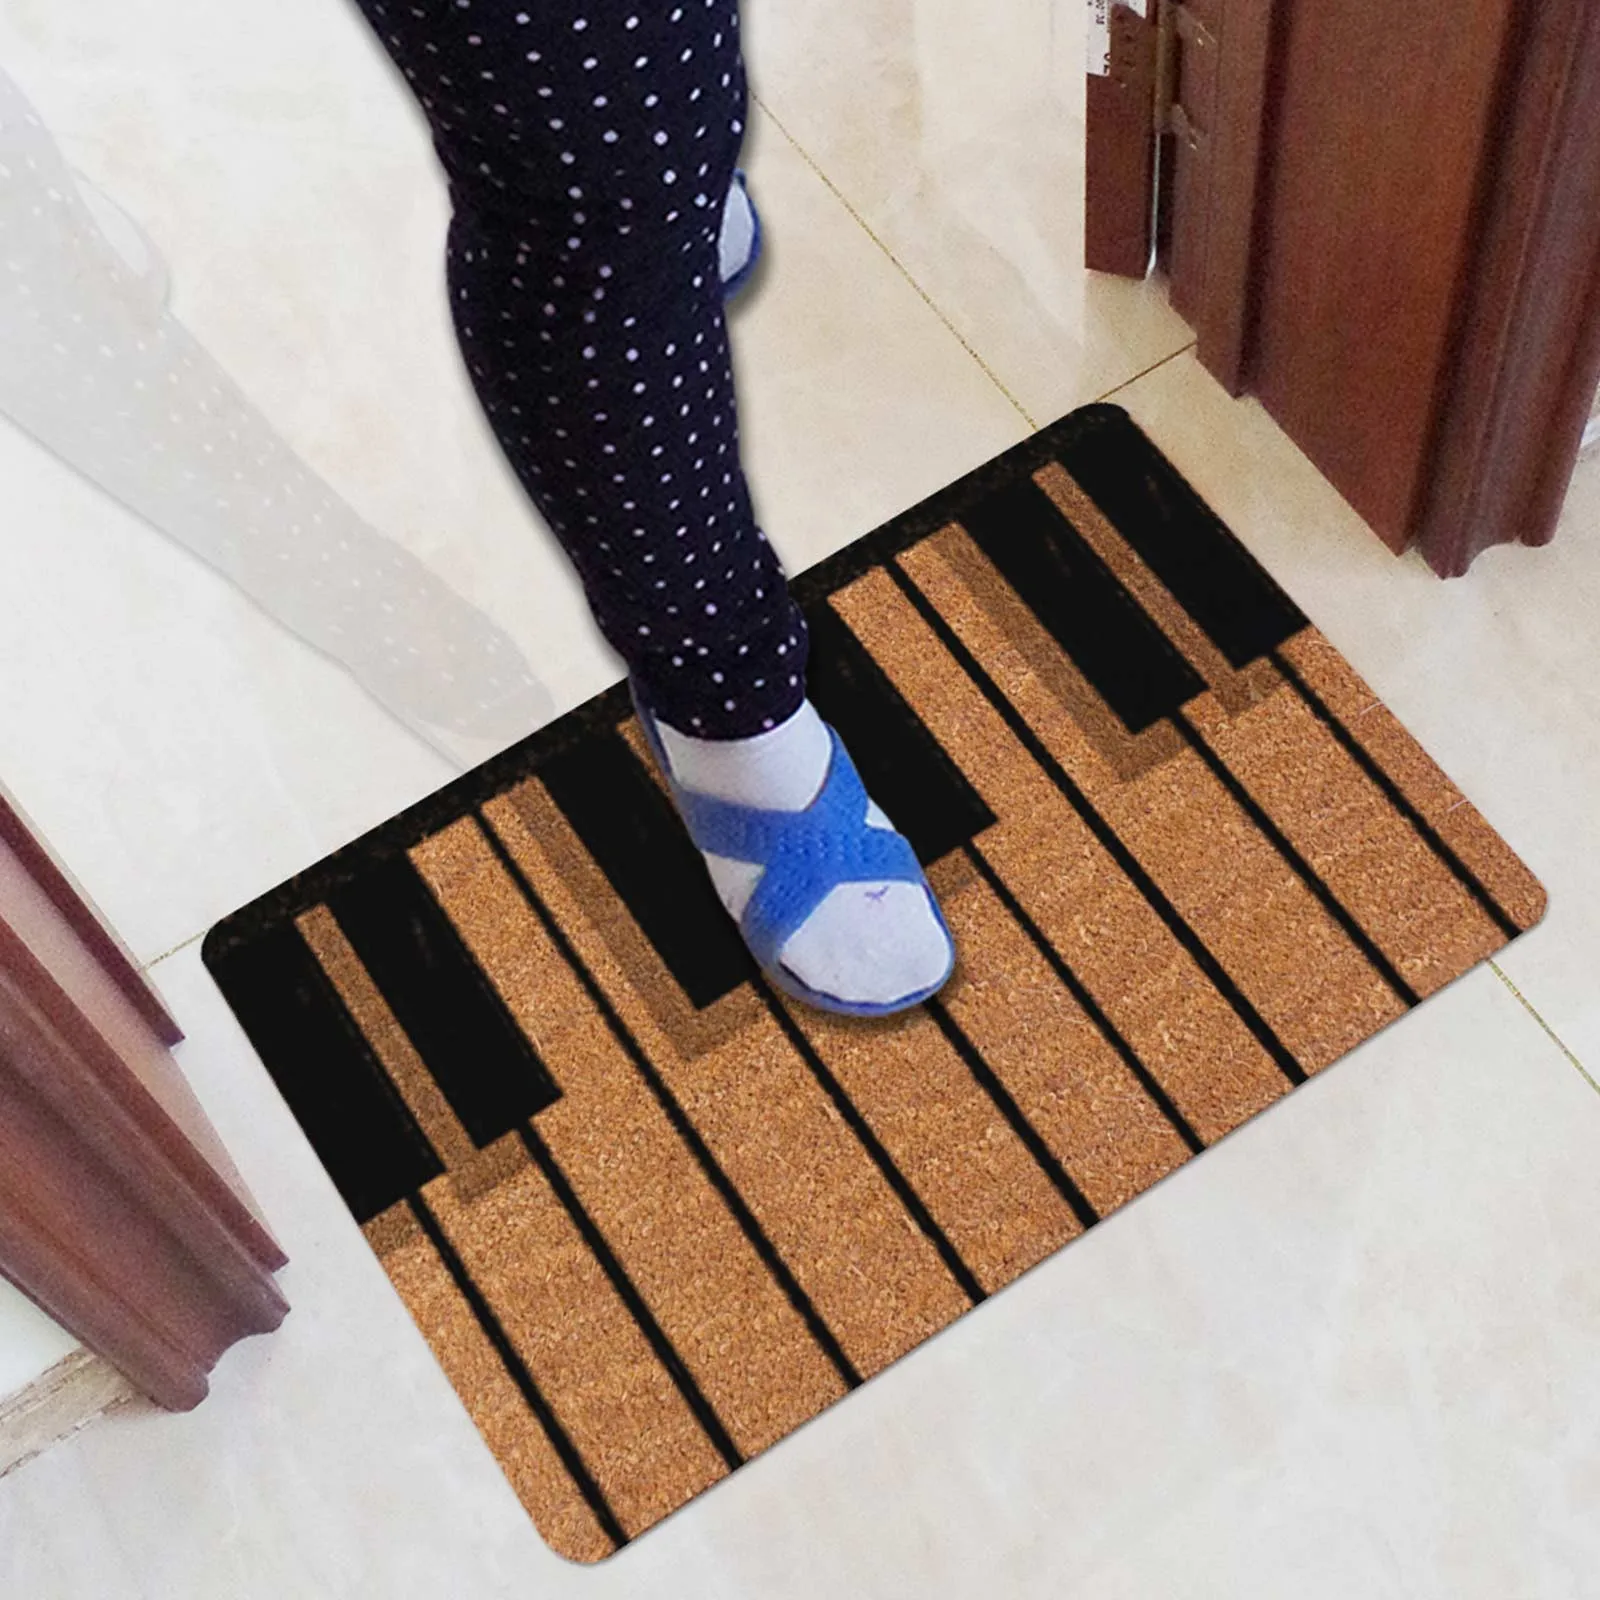 

Non Slip Rubber Foot Mats For Living Rooms Bedrooms Kitchens Bathrooms Carpets Floor Mats Absorbent Non Slip Door Mats